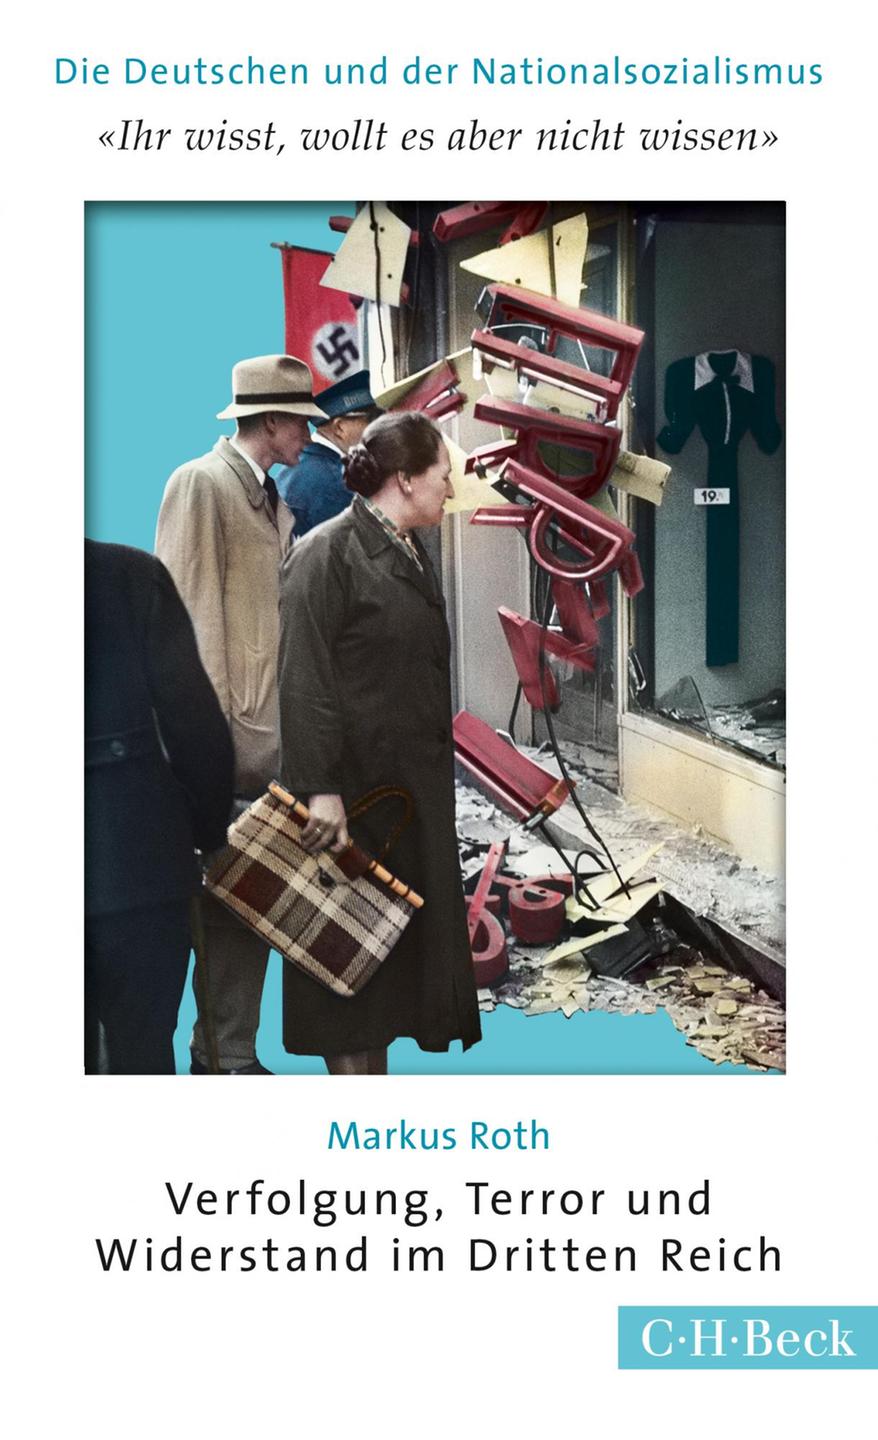 Cover Markus Roth: "Ihr wisst, wollt es aber nicht wissen"